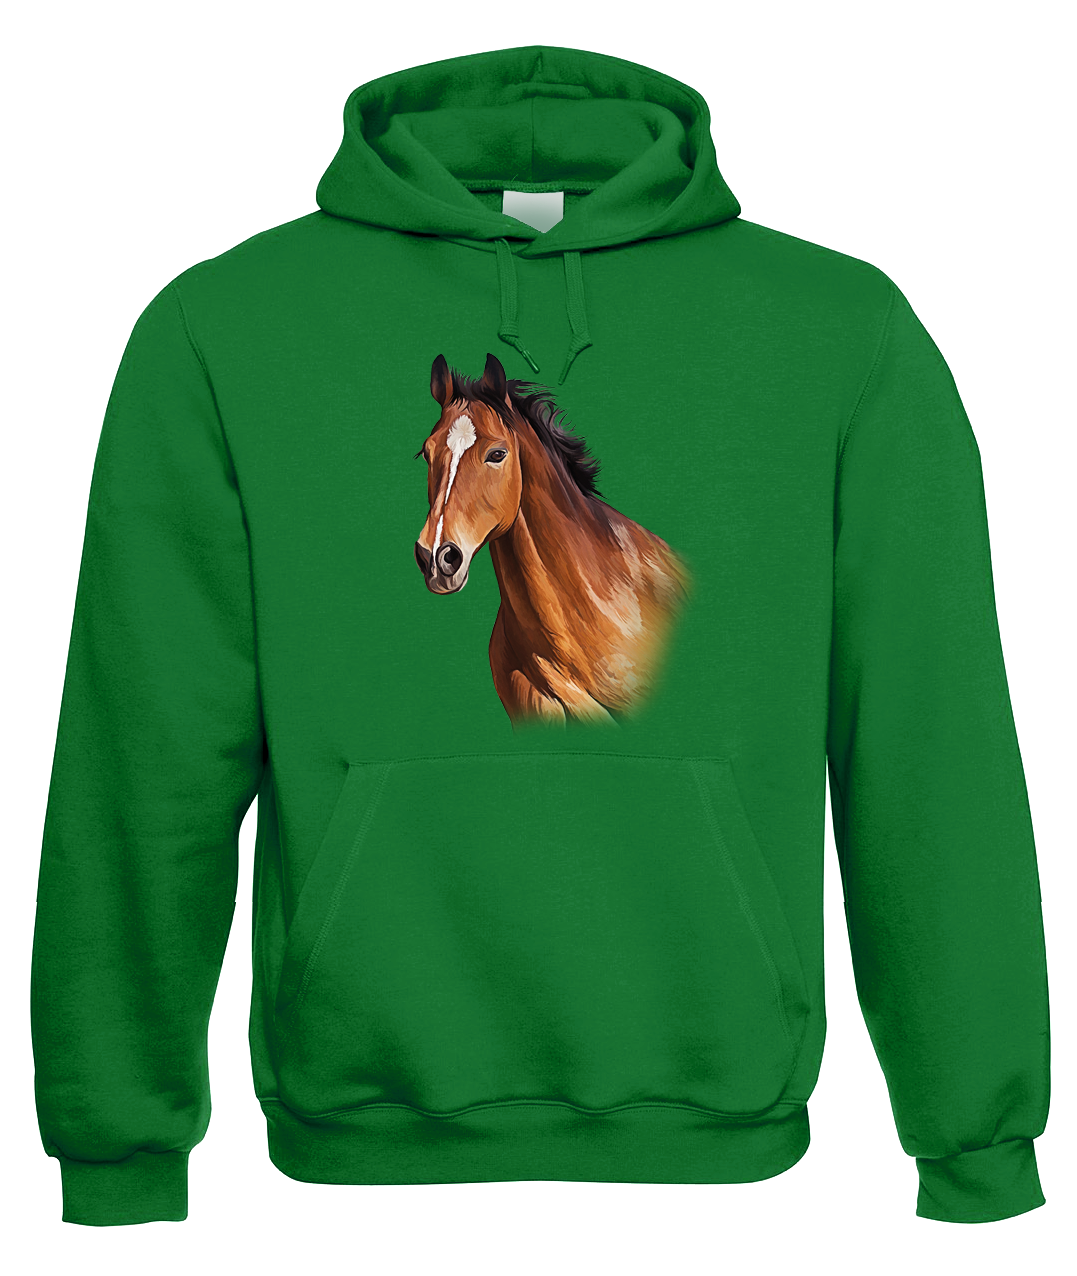 Mikina s koněm - Hnědák Velikost: S, Barva: Zelená